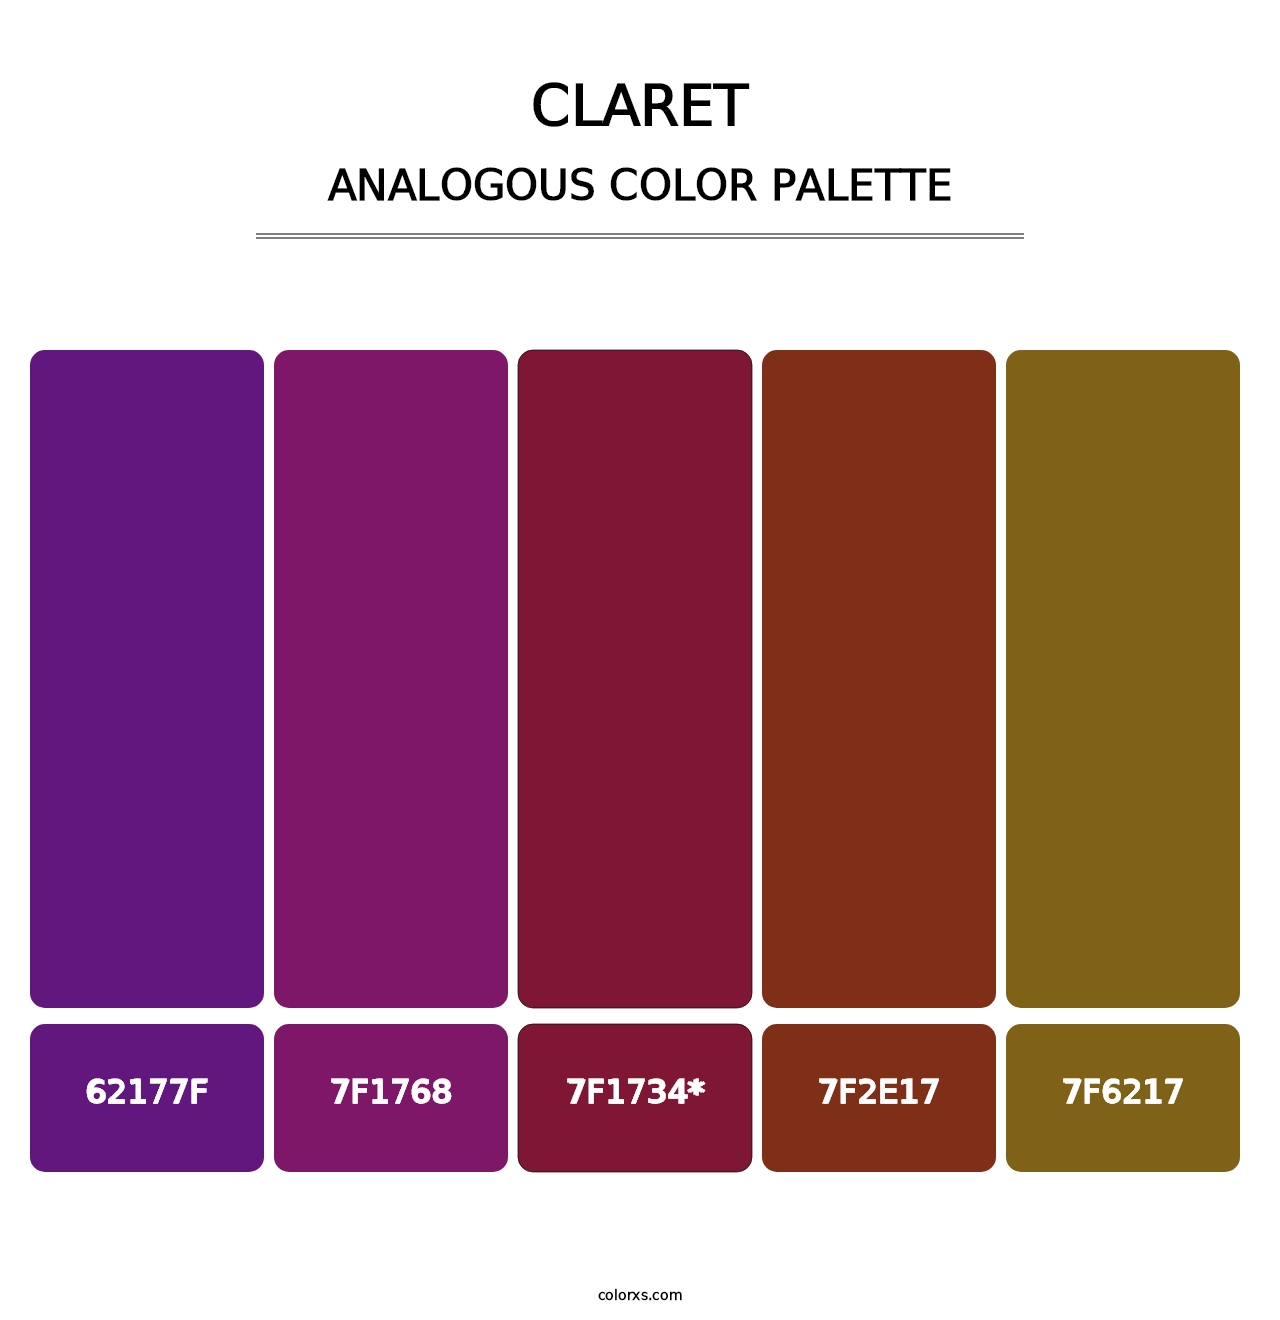 Claret - Analogous Color Palette